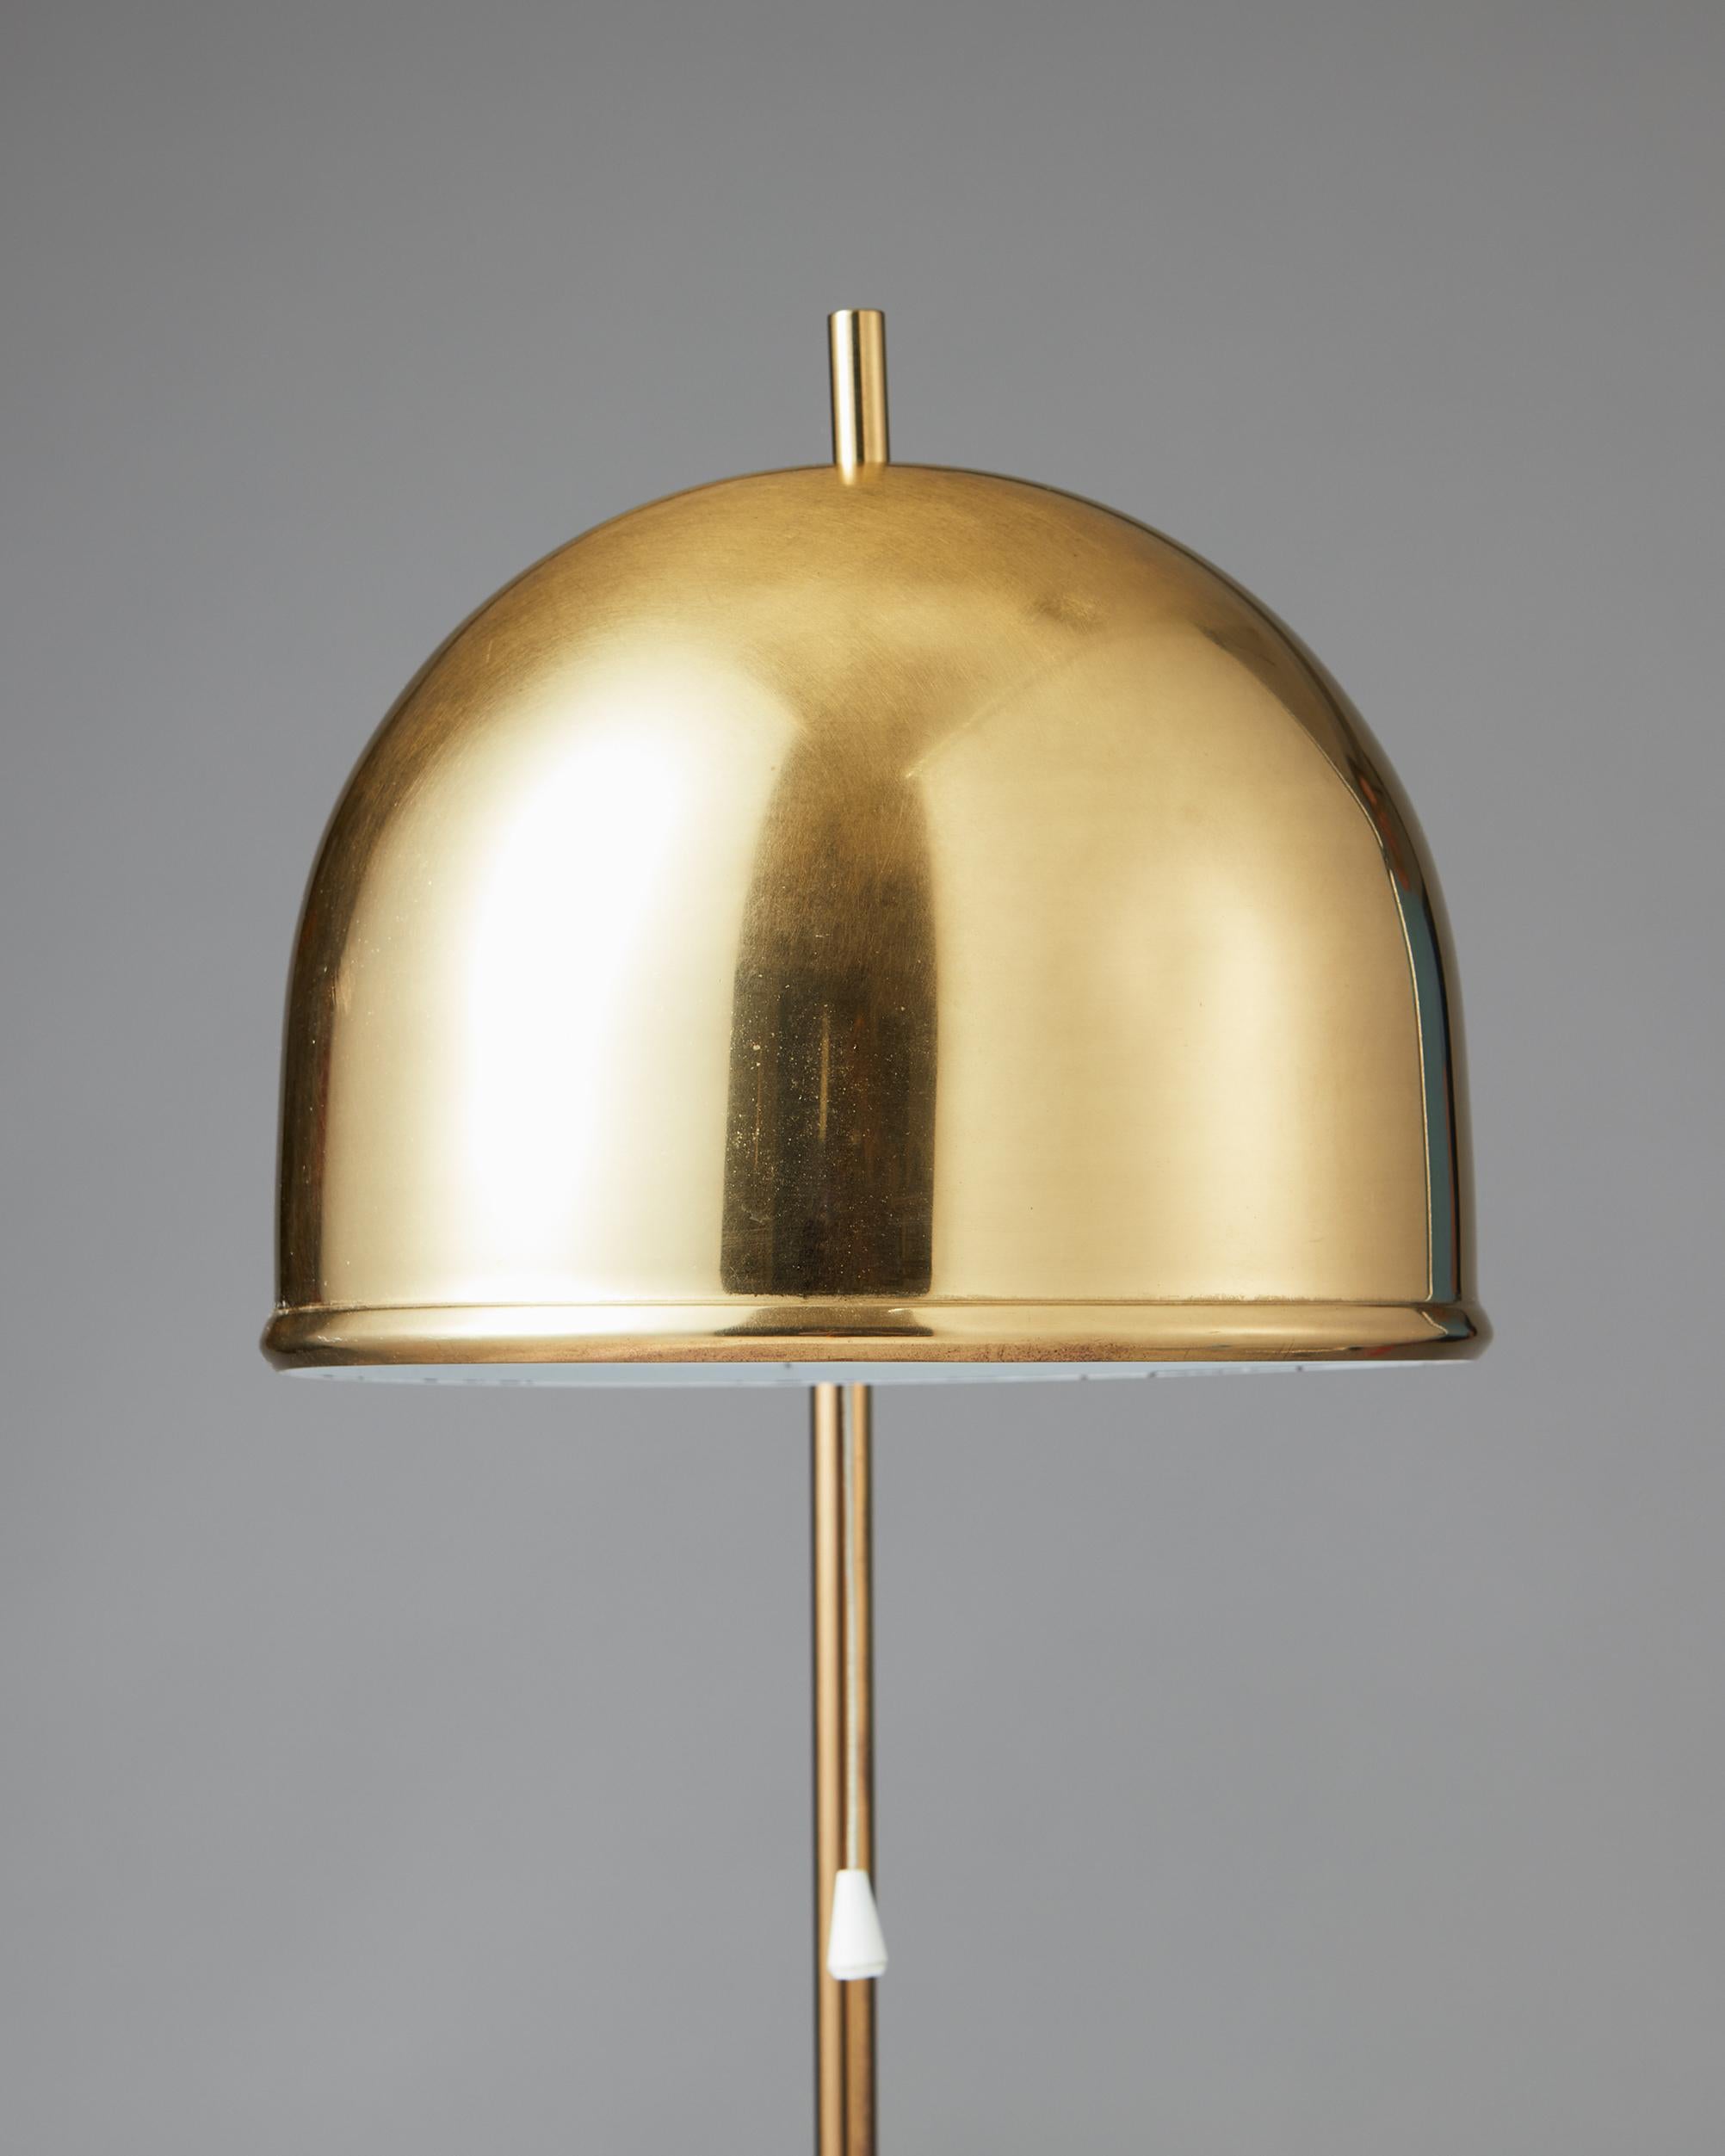 Mid-Century Modern Floor Lamp Model G-075 Designed by Eje Ahlgren for Bergboms, Sweden, 1960’s